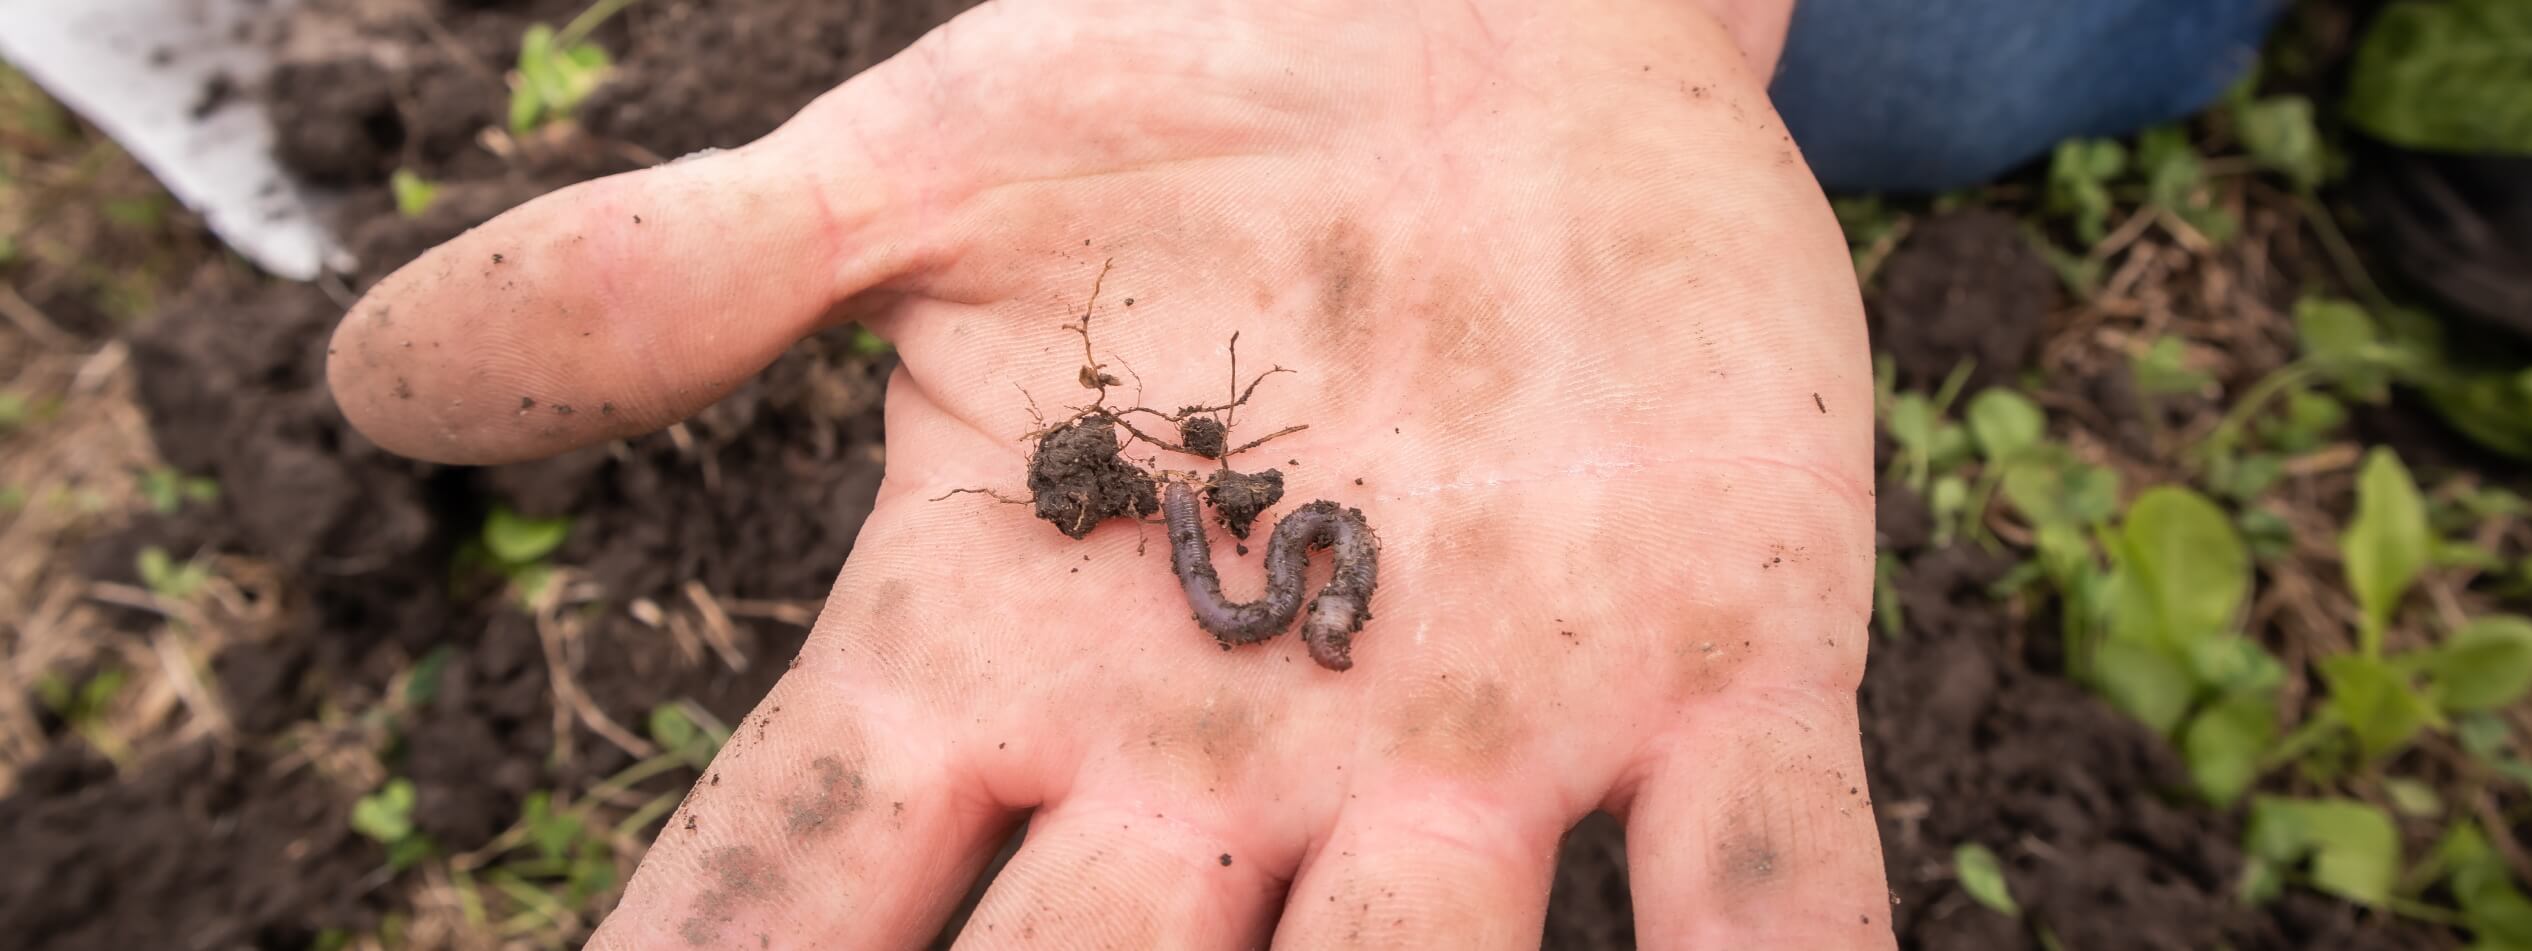 Earthworm on hand